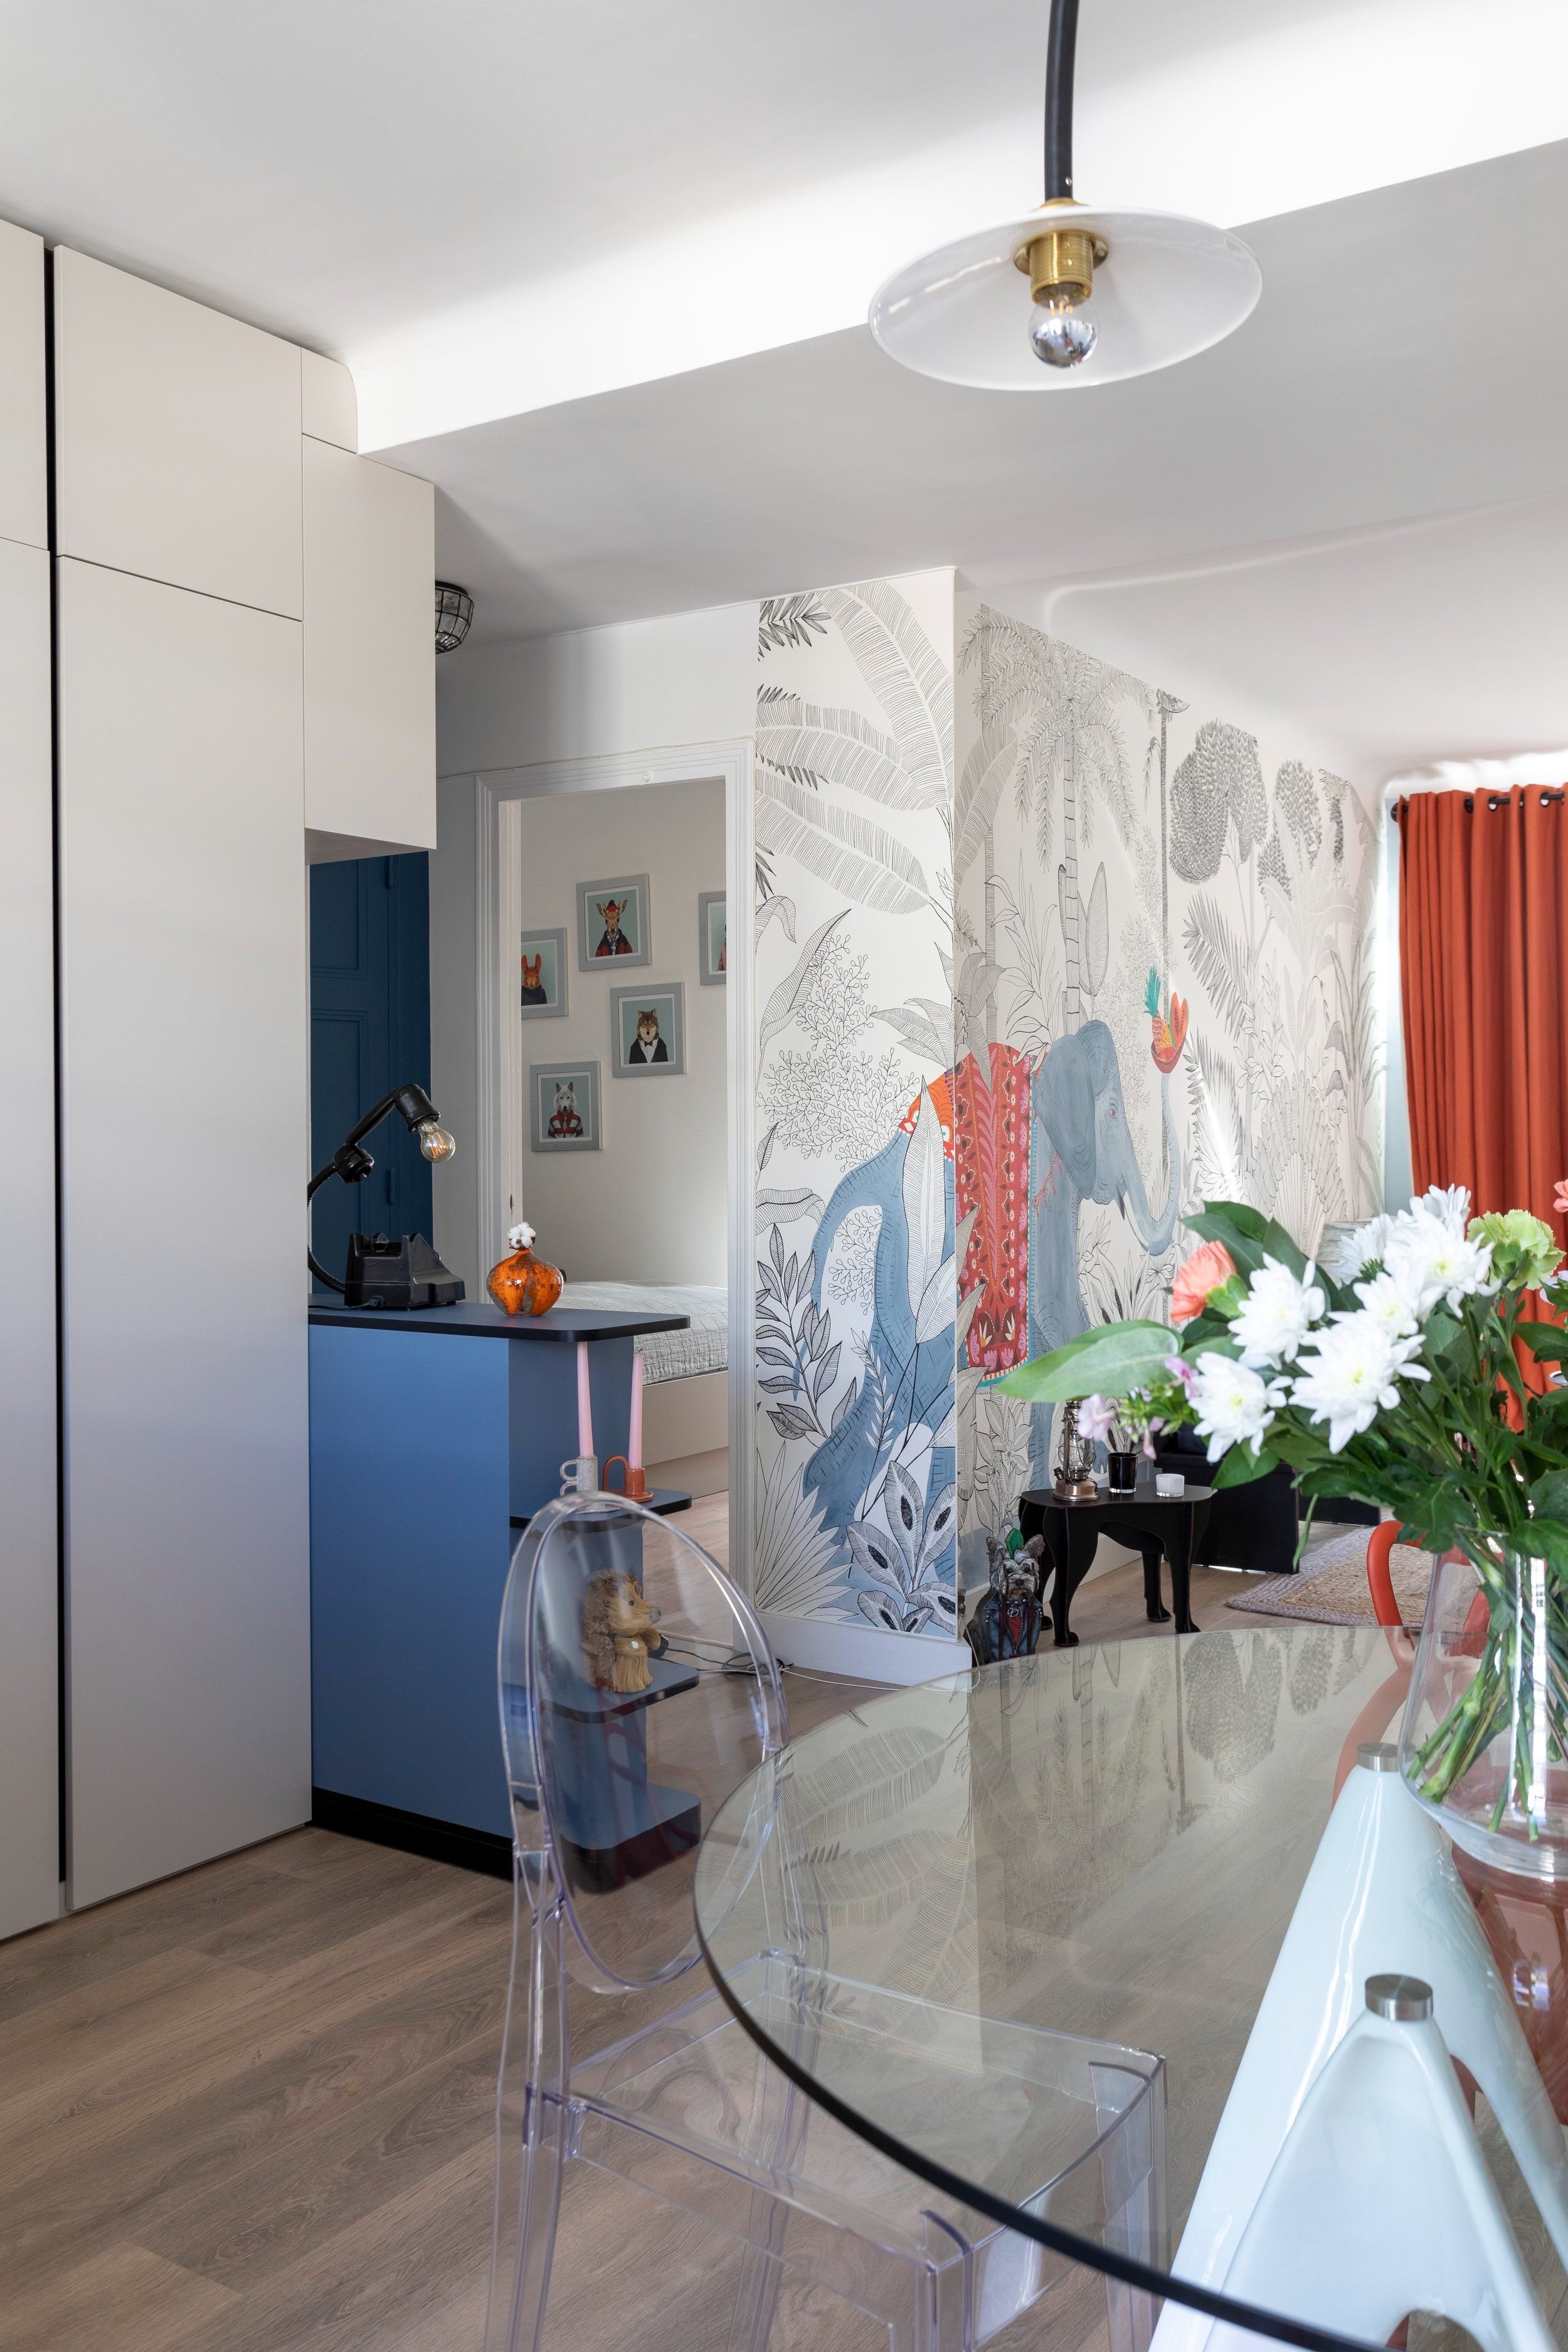 Architecte+int%C3%A9rieur+paris+d%C3%A9coration+appartement.jpg